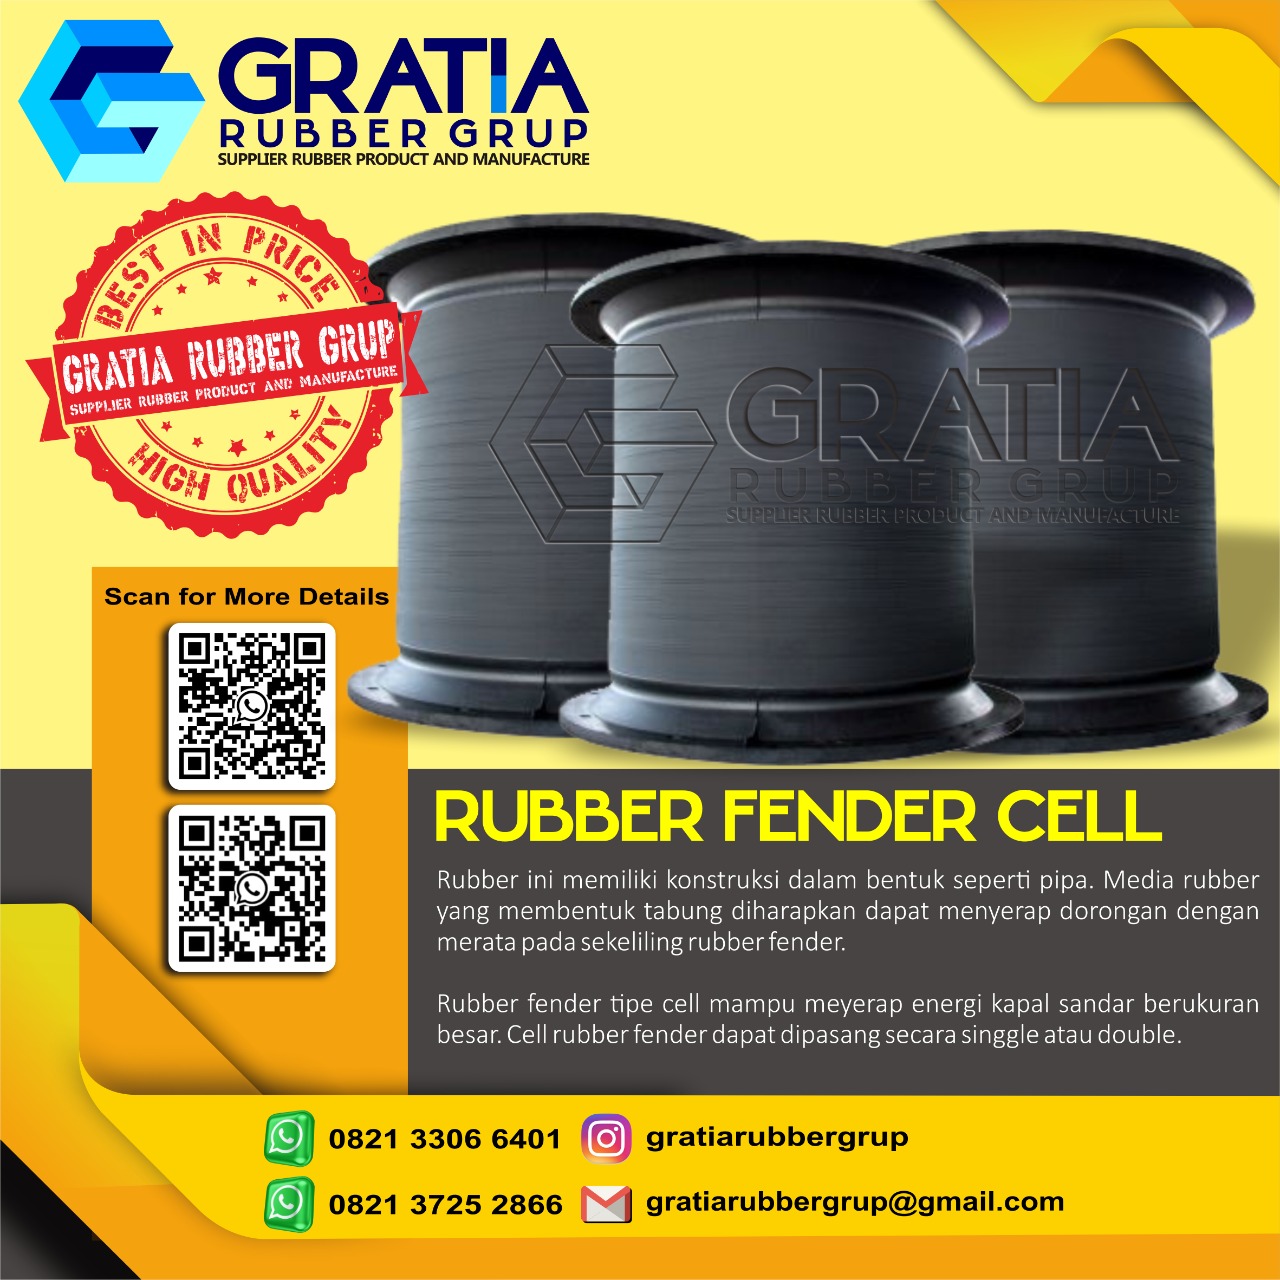 Harga Rubber Fender Berkualitas  Melayani Pengiriman Ke Lubuklinggau Sumatera Selatan Hub 0821 3306 0461